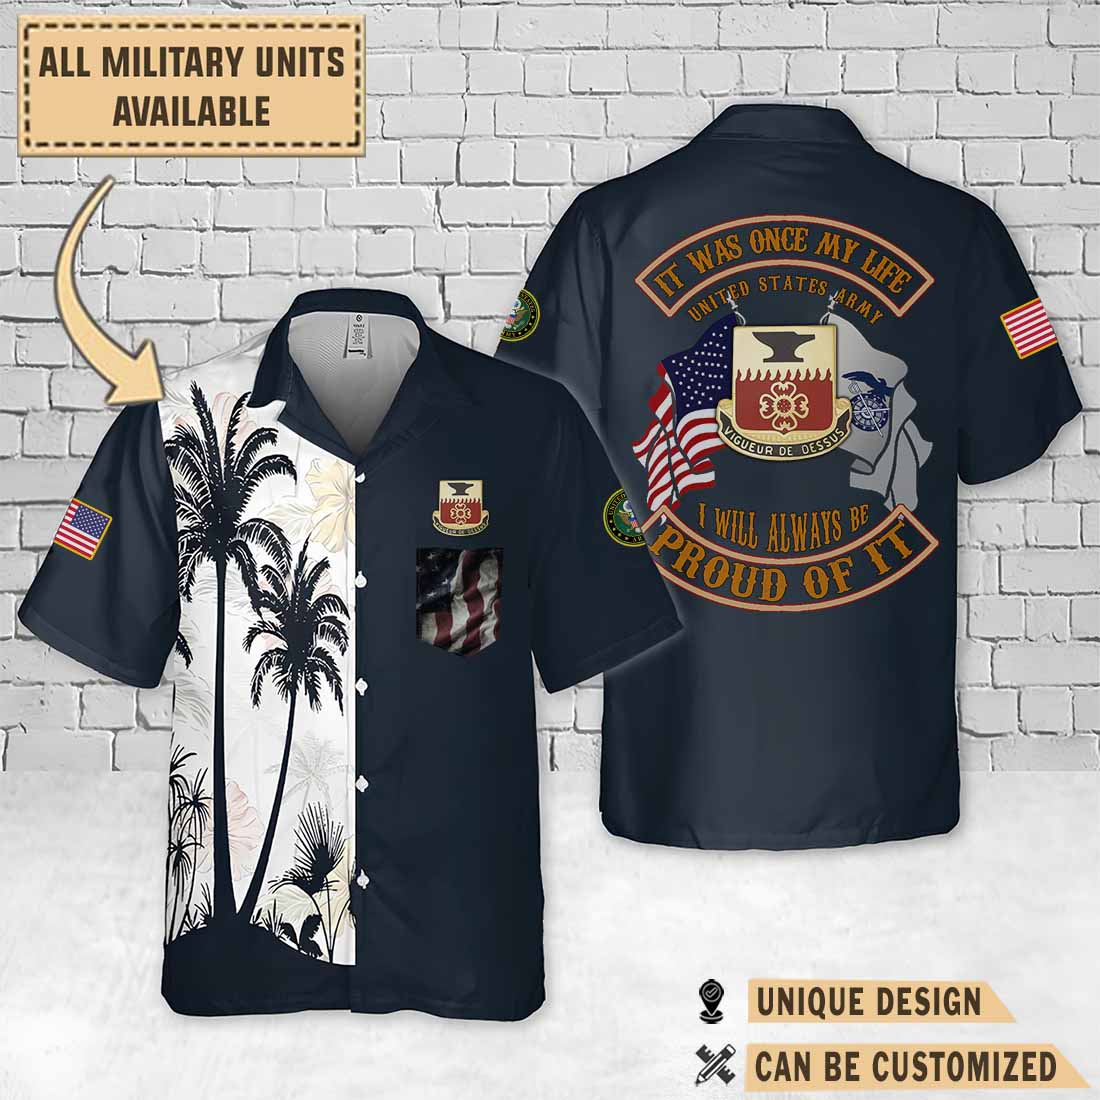 730th qm bn 730th quartermaster battalionpalm tree hawaiian shirt 7j49i